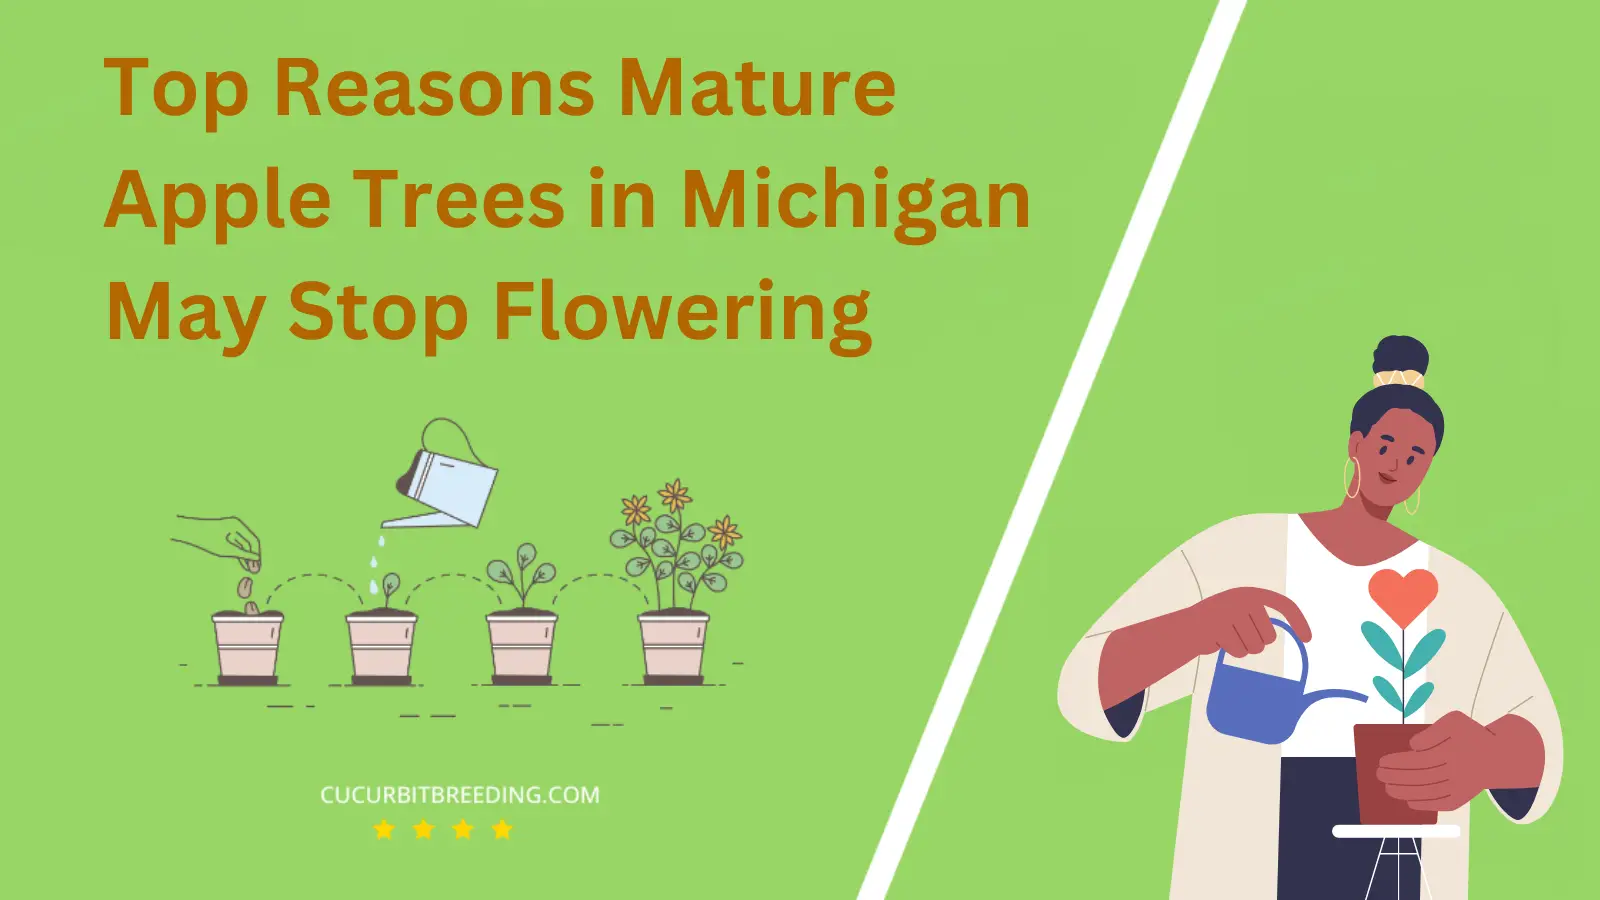 Top Reasons Mature Apple Trees in Michigan May Stop Flowering